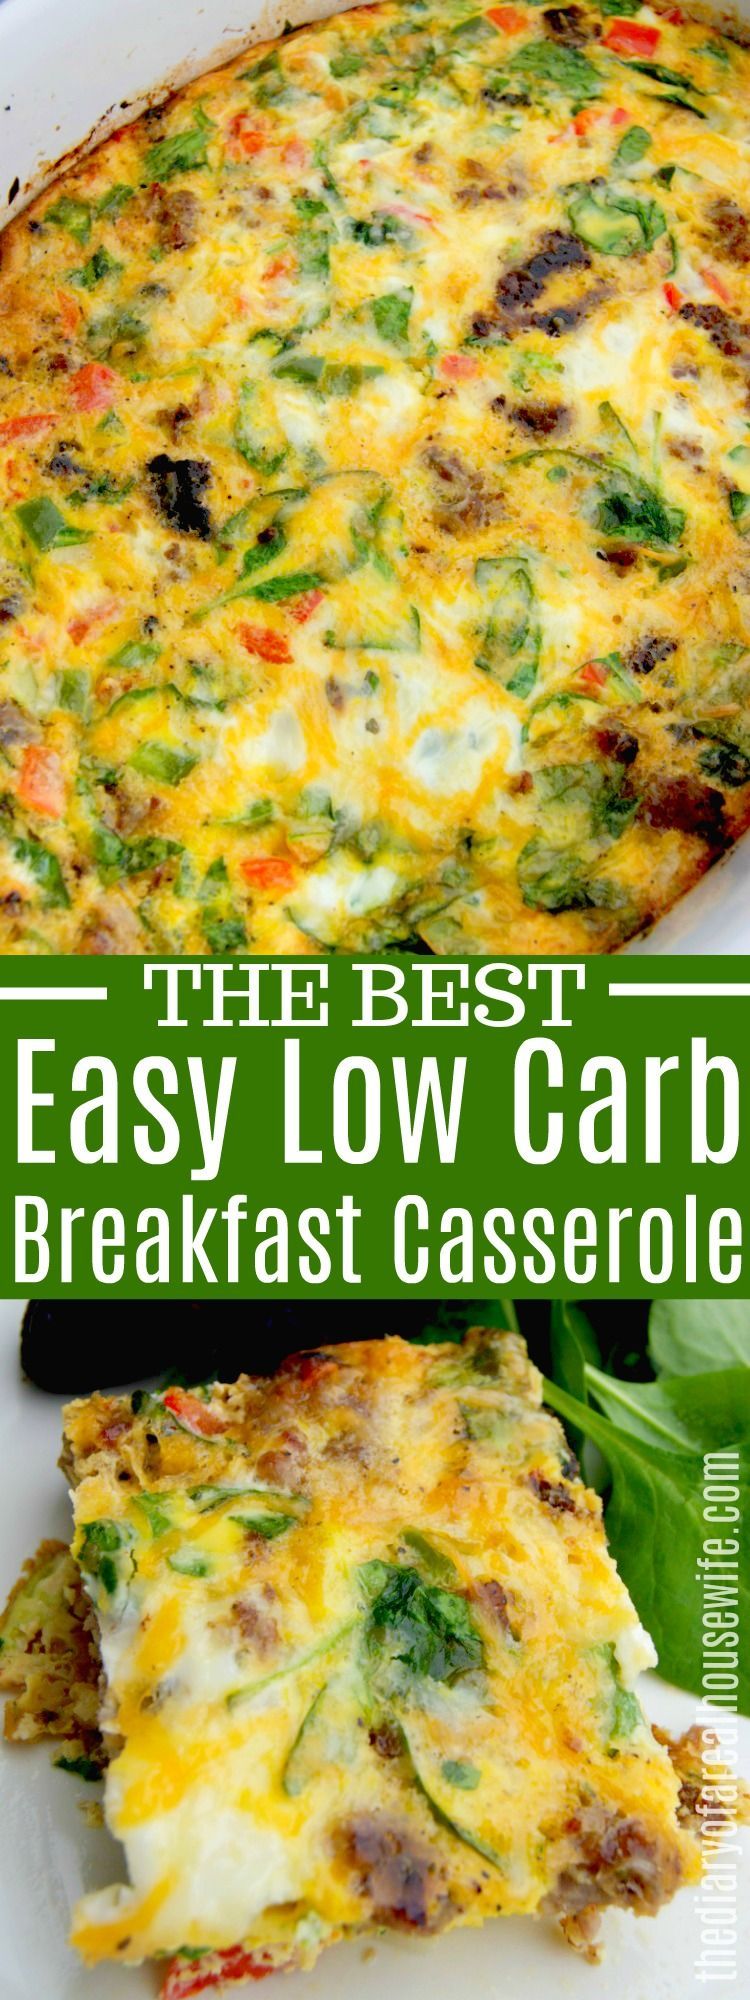 Easy Low Carb Breakfast Casserole -   15 healthy recipes Breakfast casserole ideas